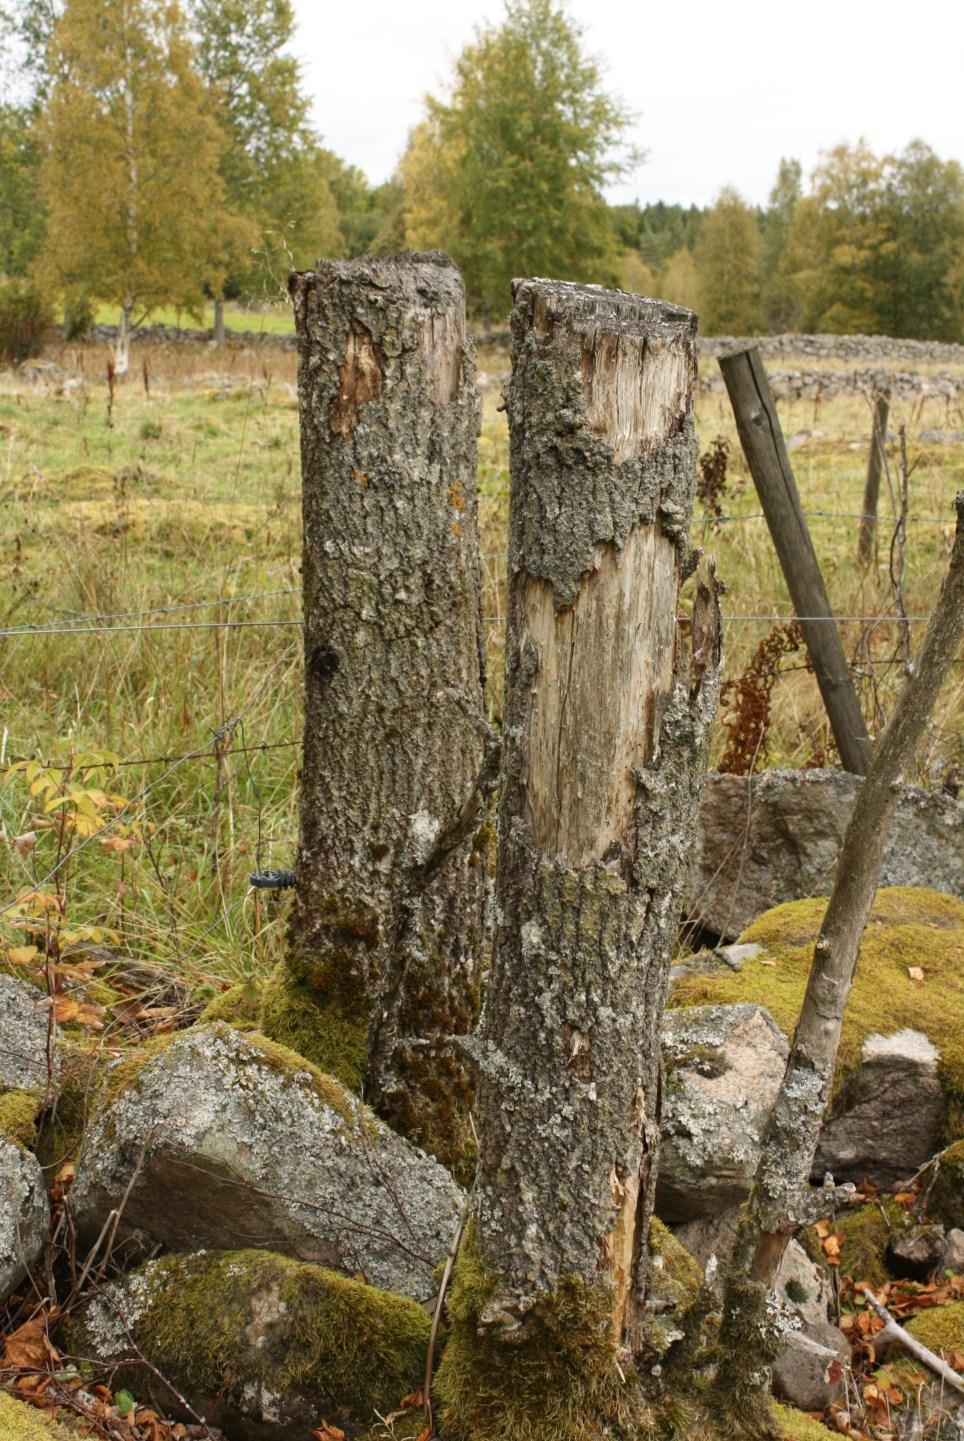 De träd som inte överlever topphuggning ger högstubbar som är mycket värdefulla för insektsliv m.m. Trädarter som skjuter mycket rotskott, som asp, kan också gärna topphuggas för att det minskar mängden rotskott jämfört med om du tar låga stubbar.